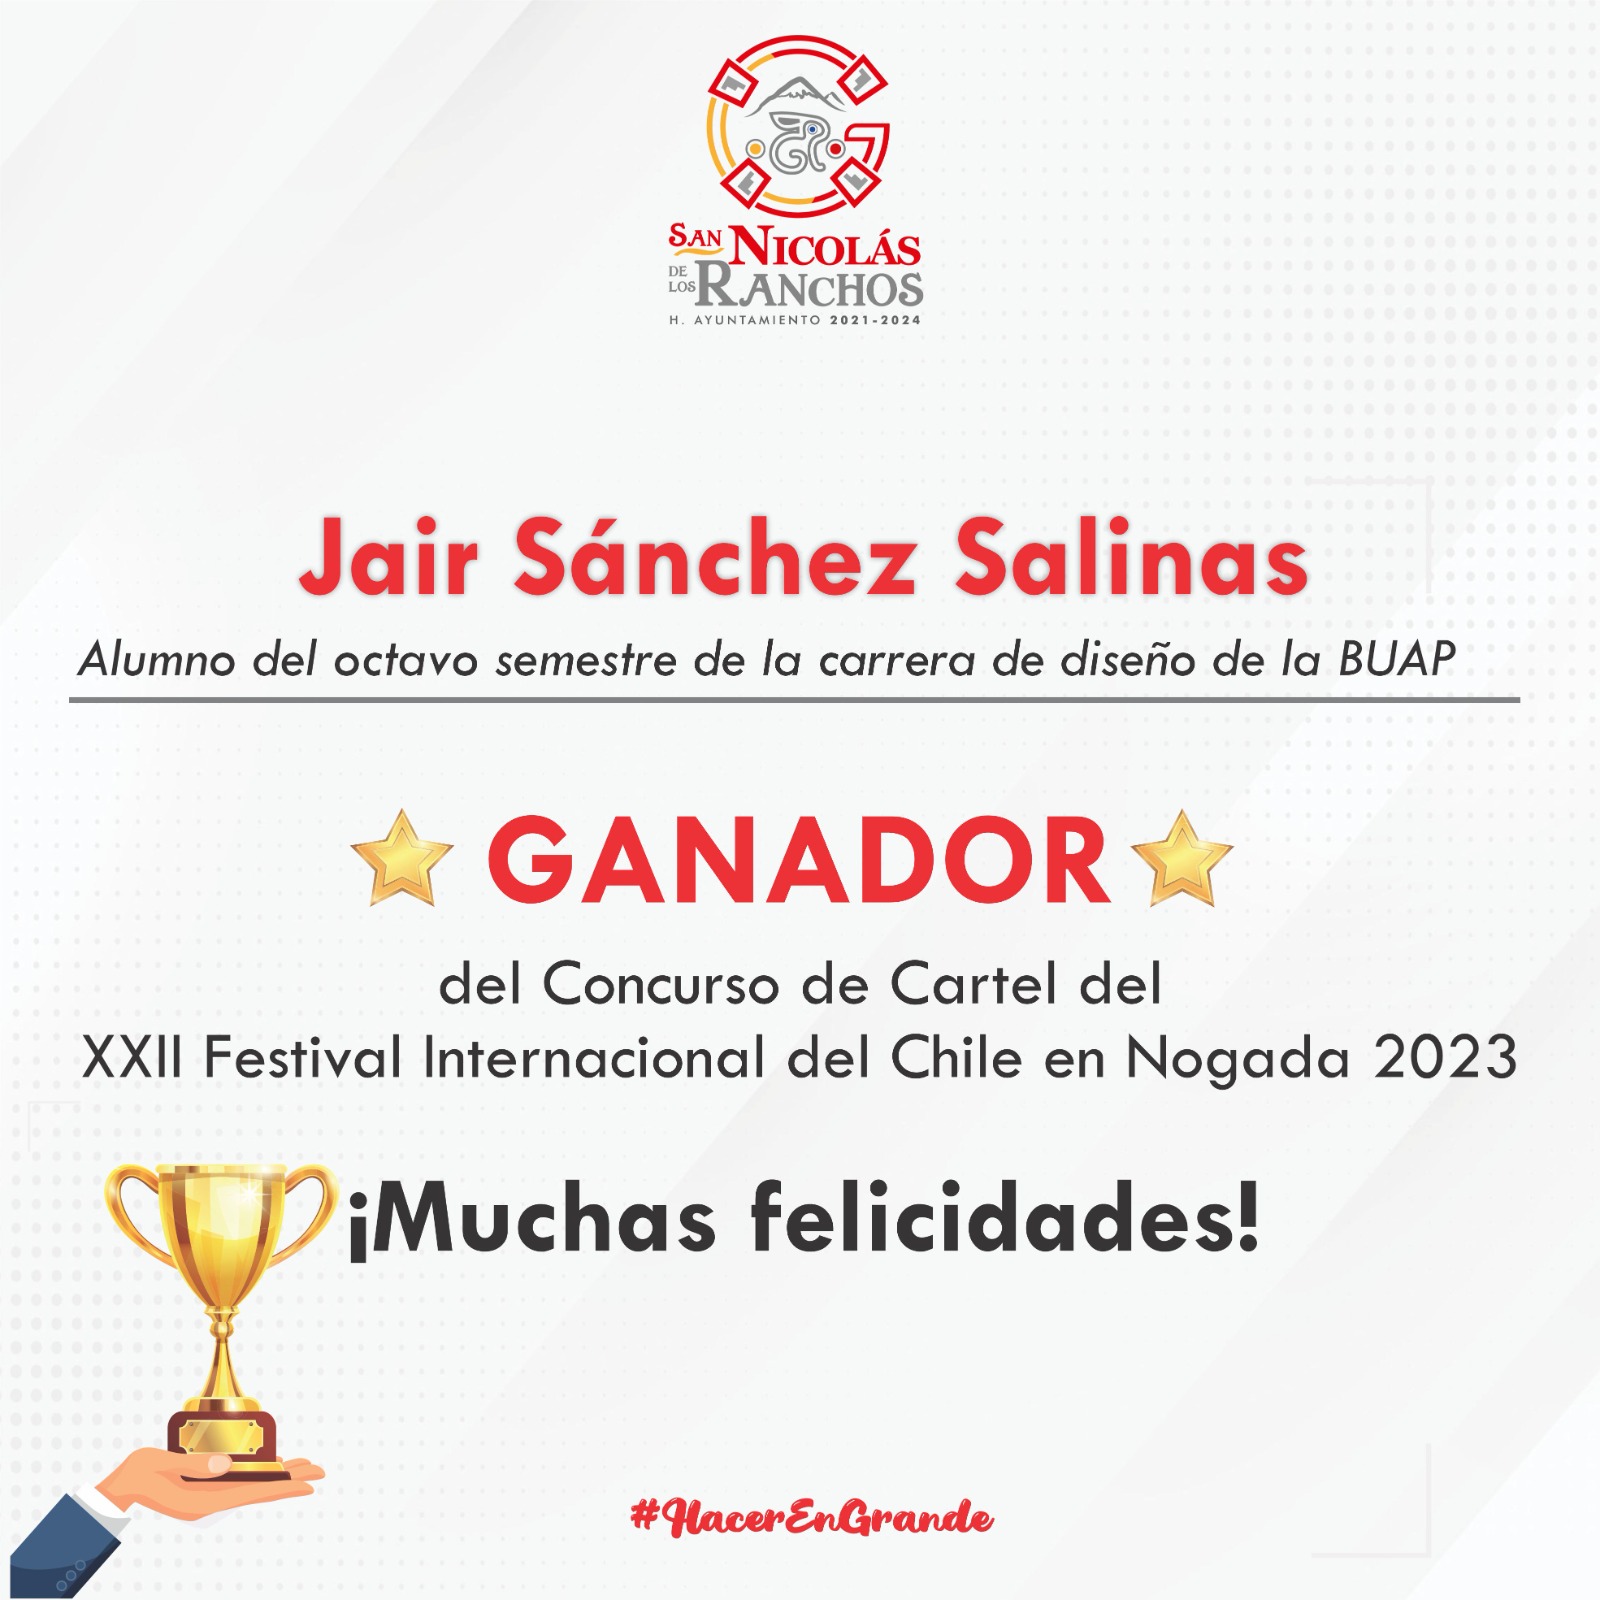 Gobierno de San Nicolás de los Ranchos anuncia al ganador del concurso del Cartel XXII Festival internacional de Chile en Nogada